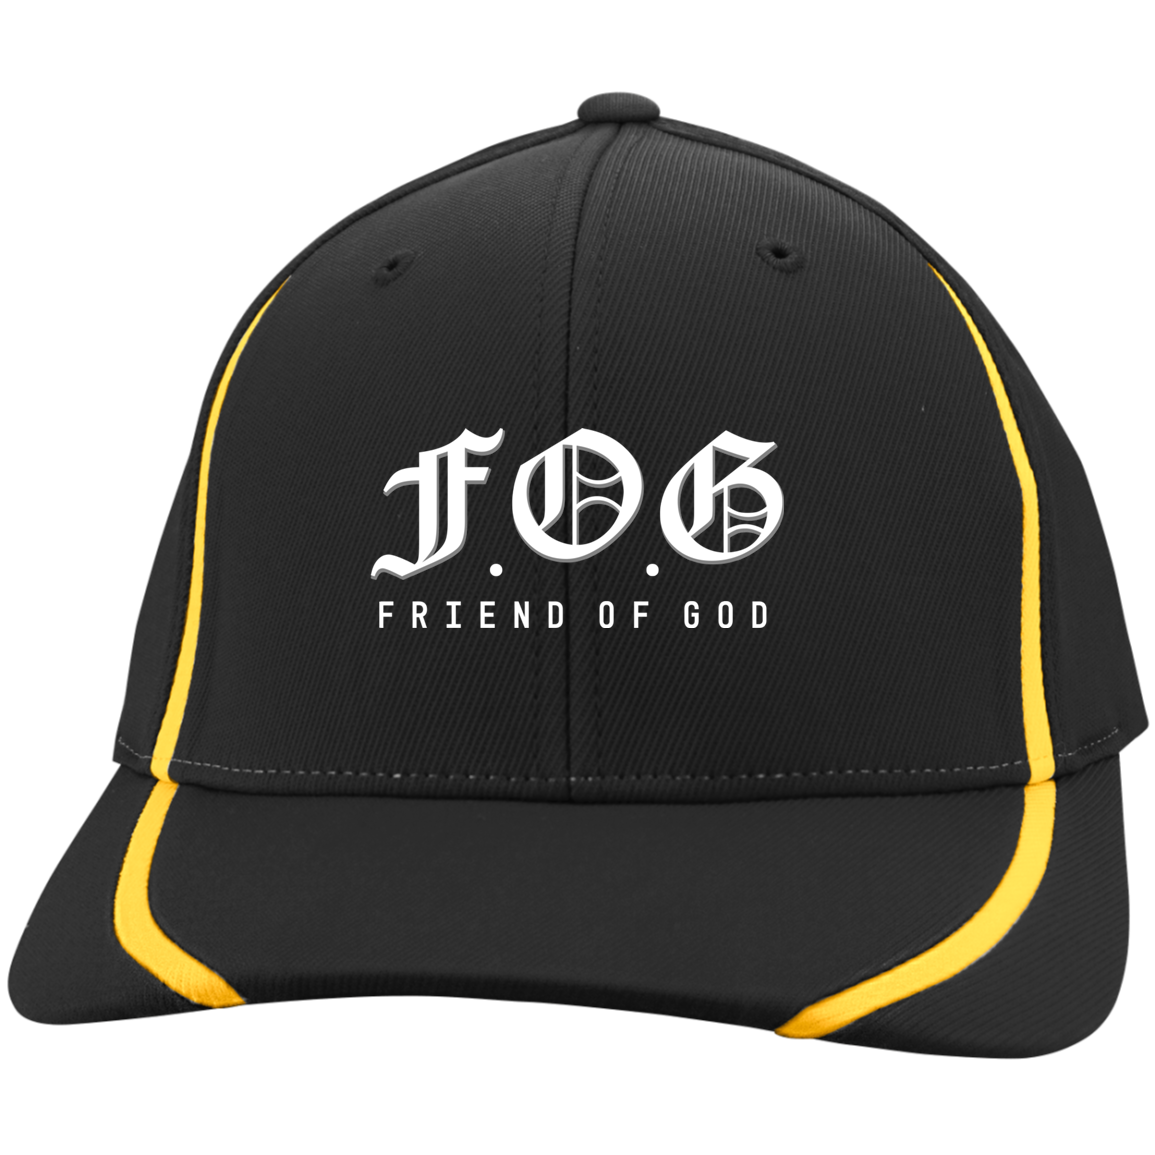 Friend of God Flexfit Colorblock Caps/Hats Covenant-Press 